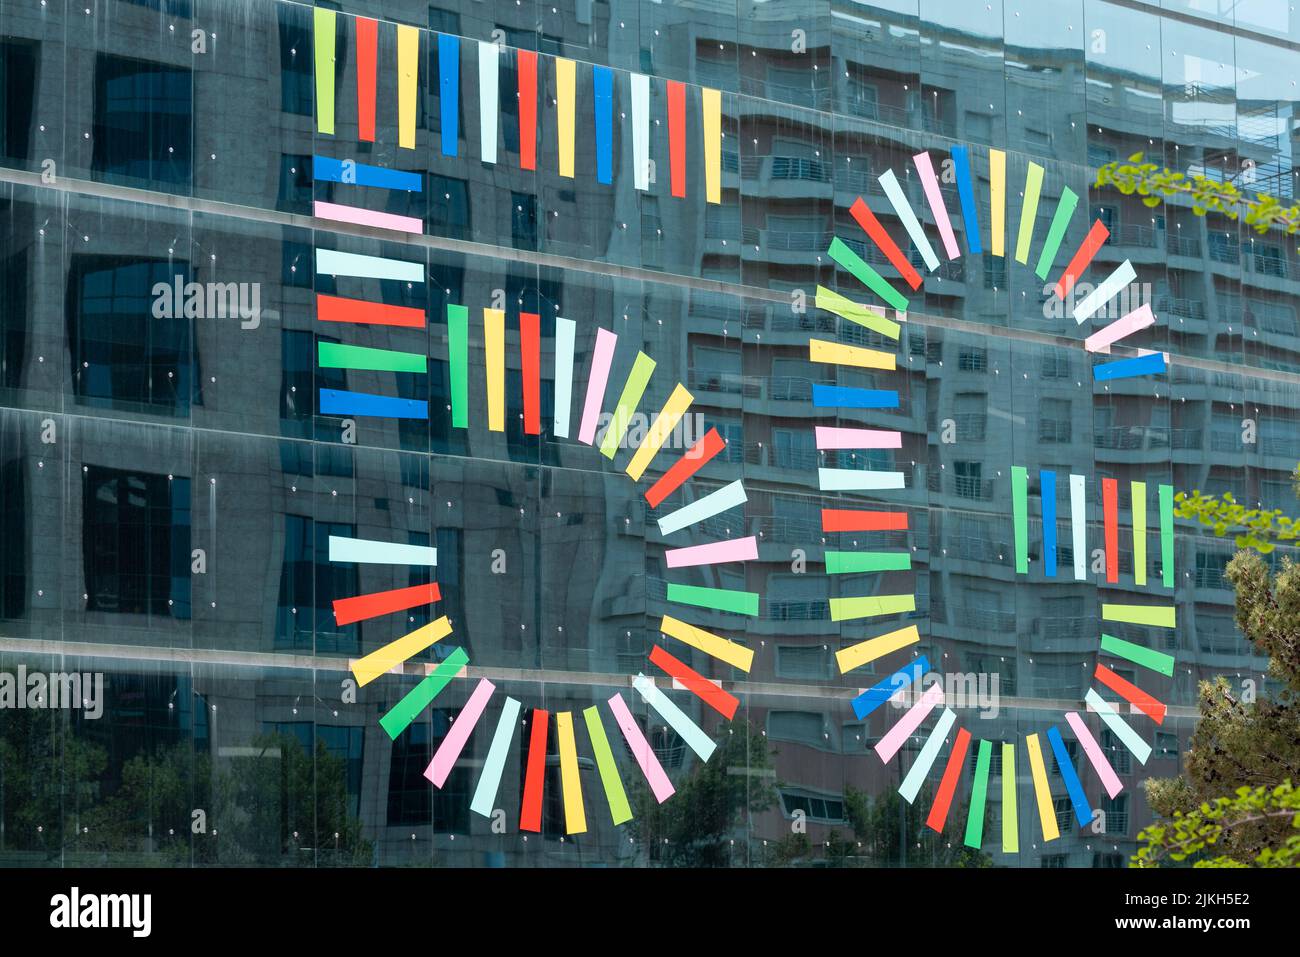 La publicité colorée de la nouvelle technologie 5G sur la façade en verre d'un bâtiment moderne Banque D'Images